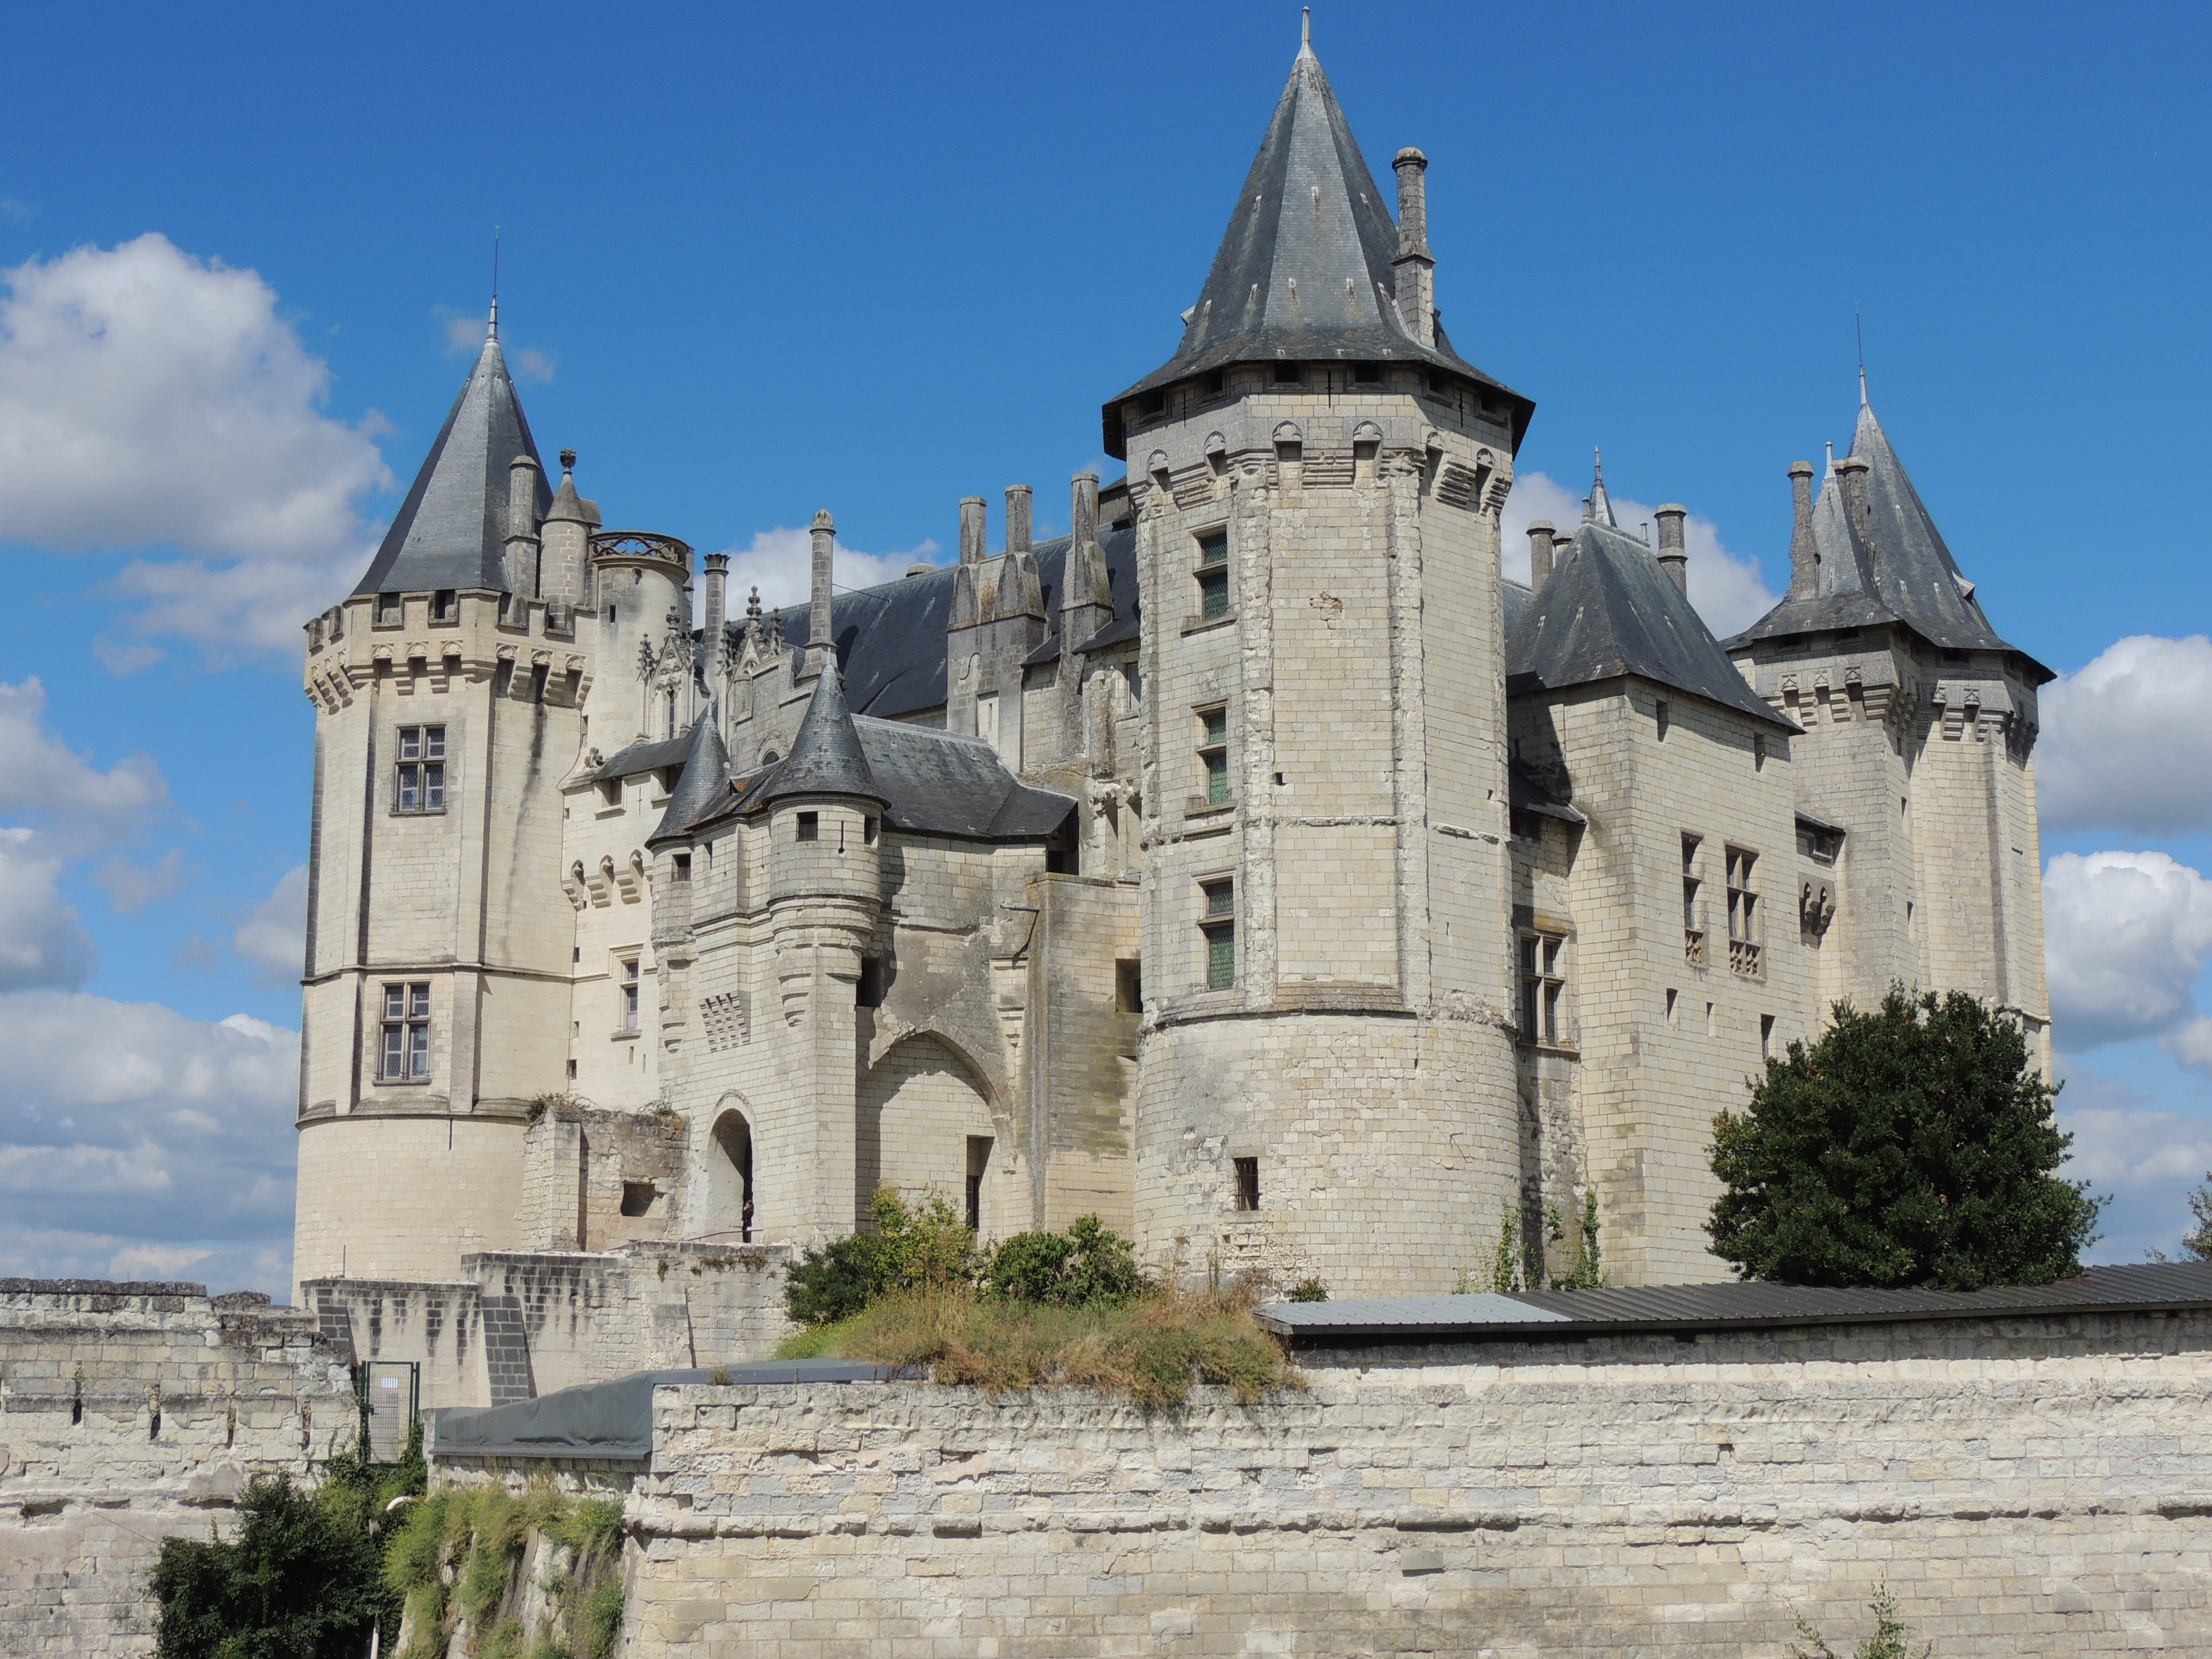 Château De Saumur Backgrounds, Compatible - PC, Mobile, Gadgets| 4608x3456 px